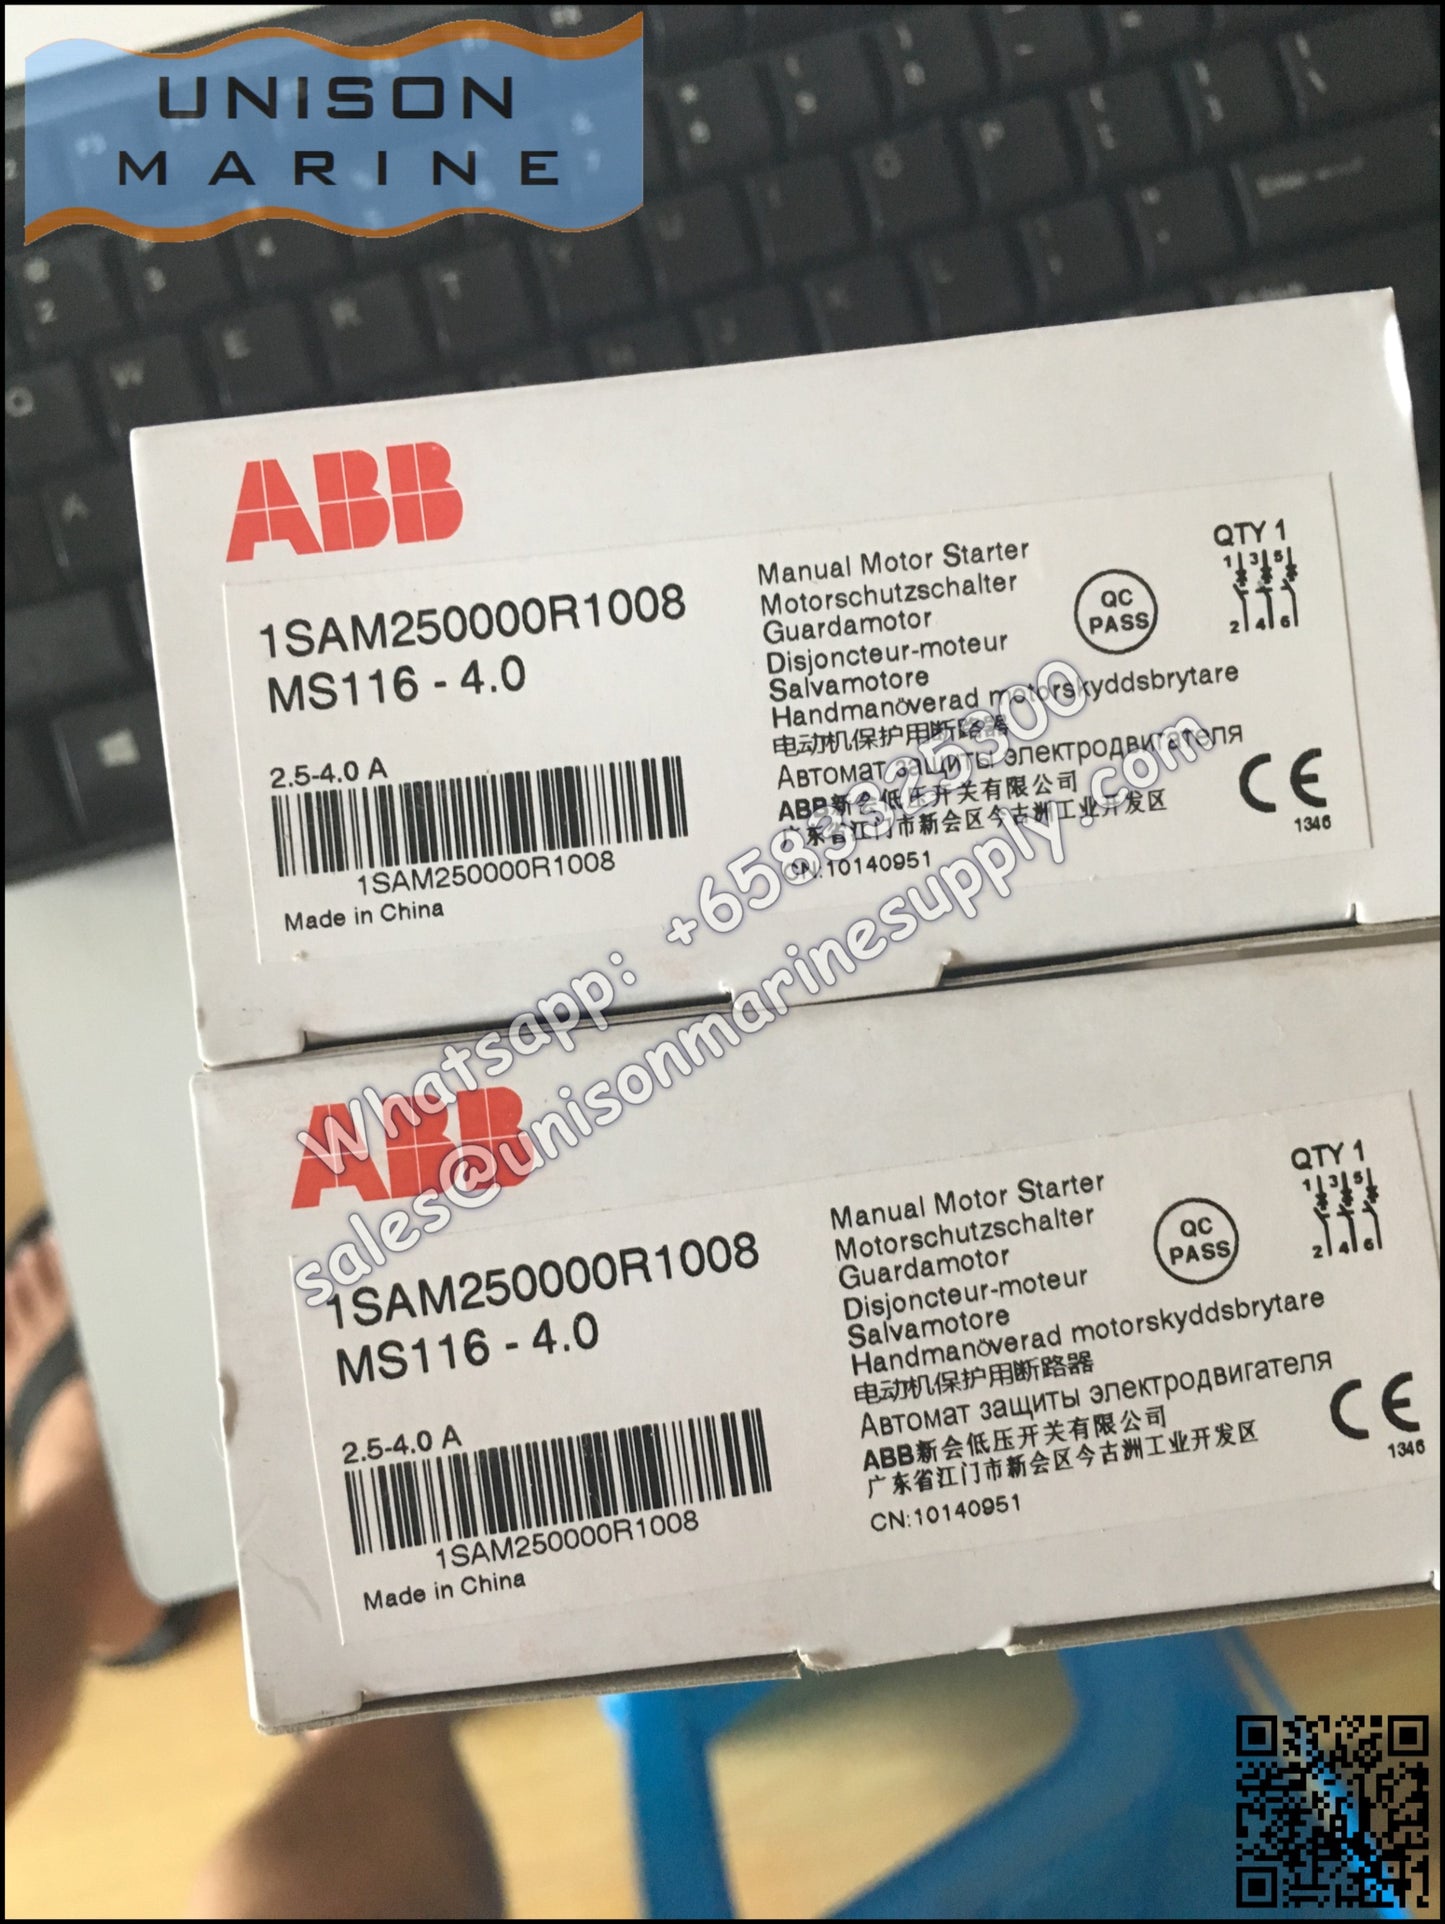 ABB Manual Motor Starter MS132-4.0 1SAM250000R1008